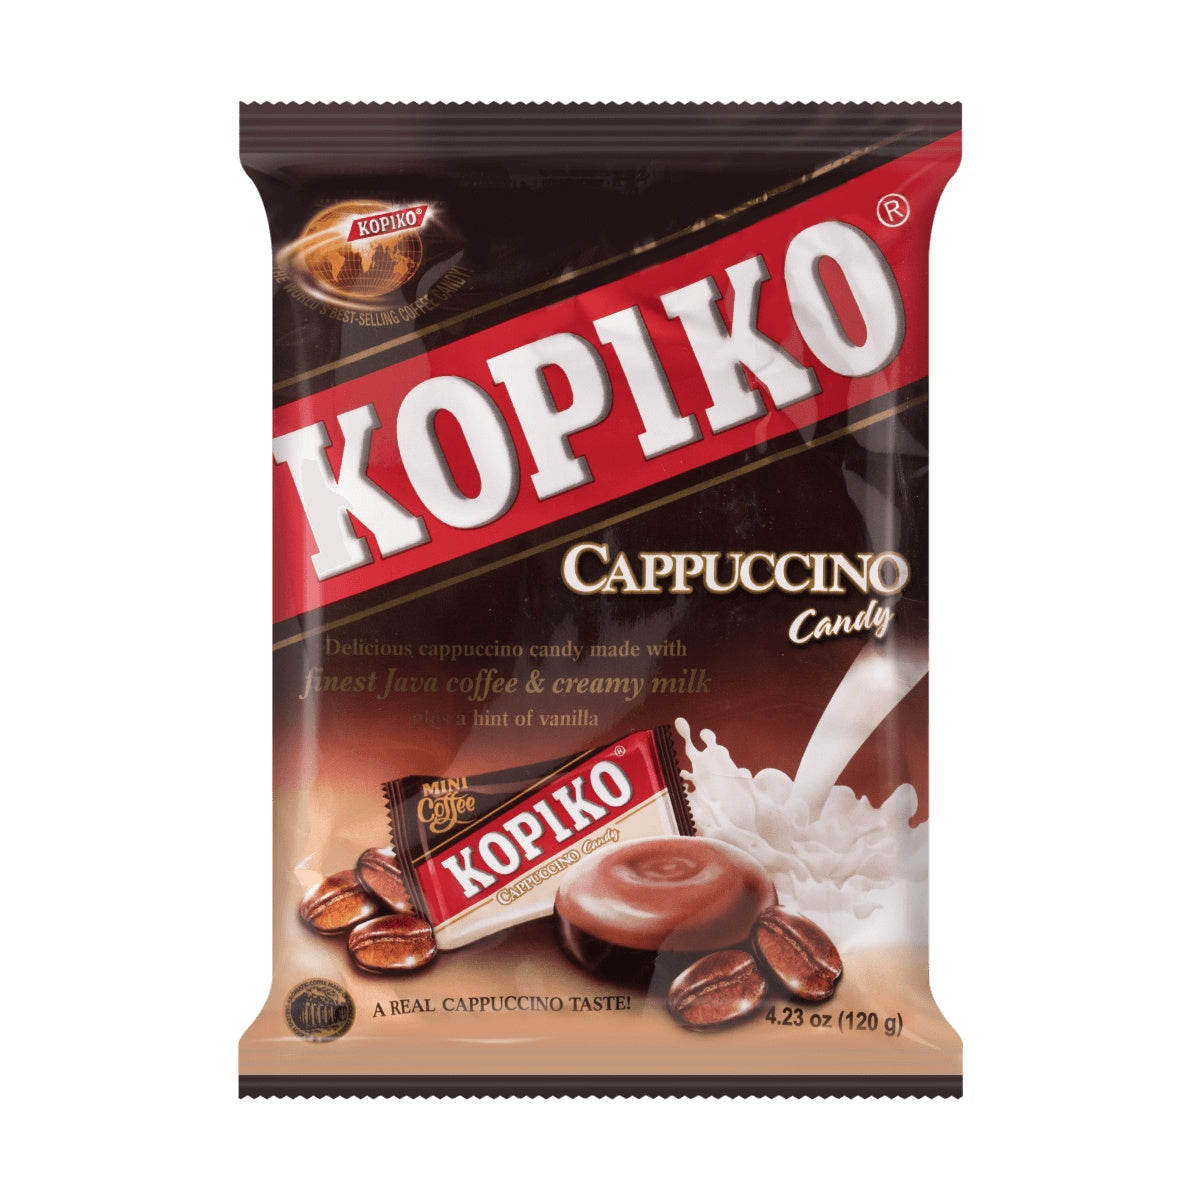 Kopiko Cappuccino Coffee Candy, 4.23 Oz